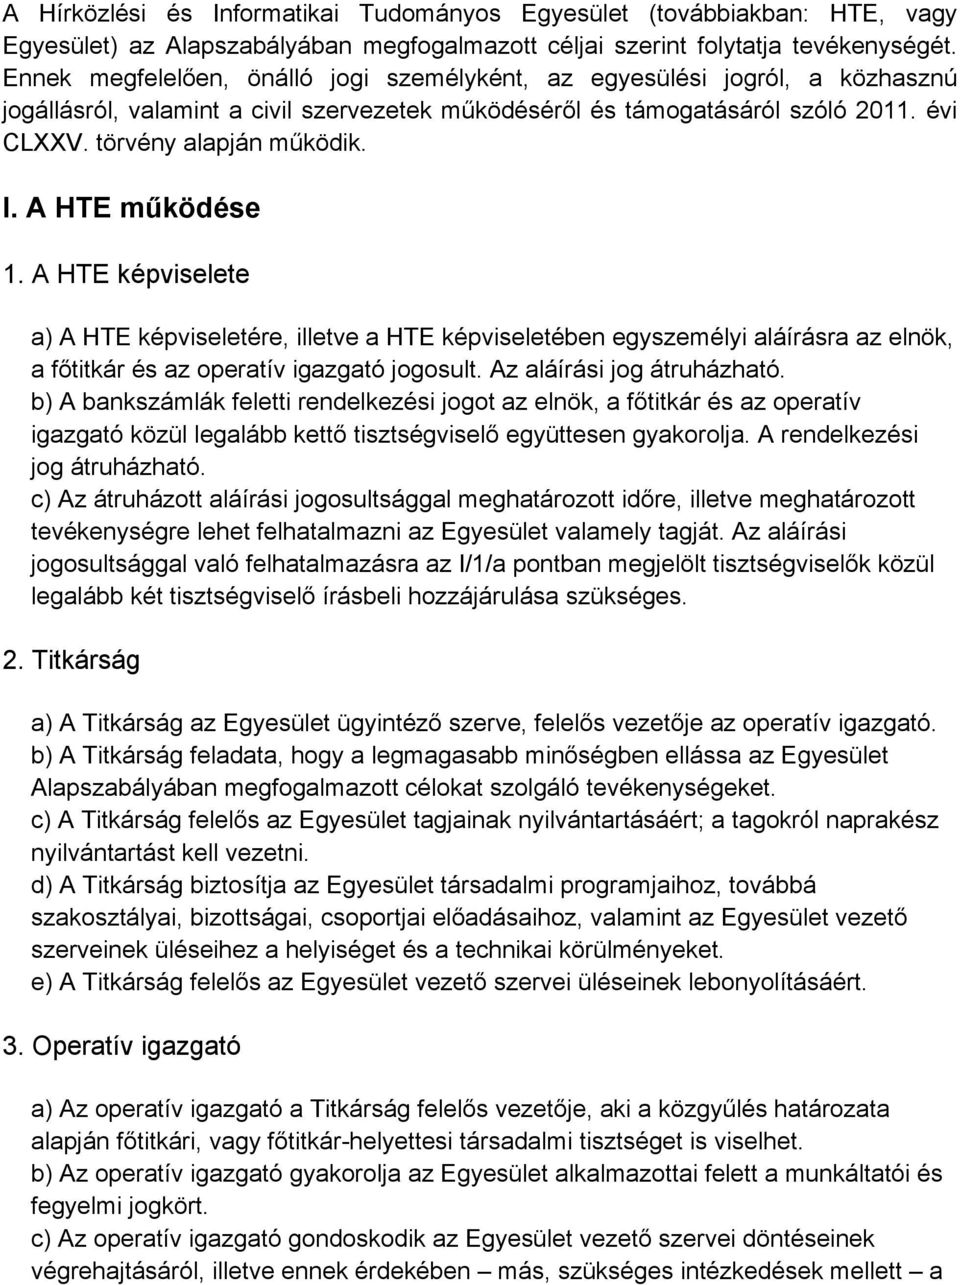 A HTE működése 1. A HTE képviselete a) A HTE képviseletére, illetve a HTE képviseletében egyszemélyi aláírásra az elnök, a főtitkár és az operatív igazgató jogosult. Az aláírási jog átruházható.